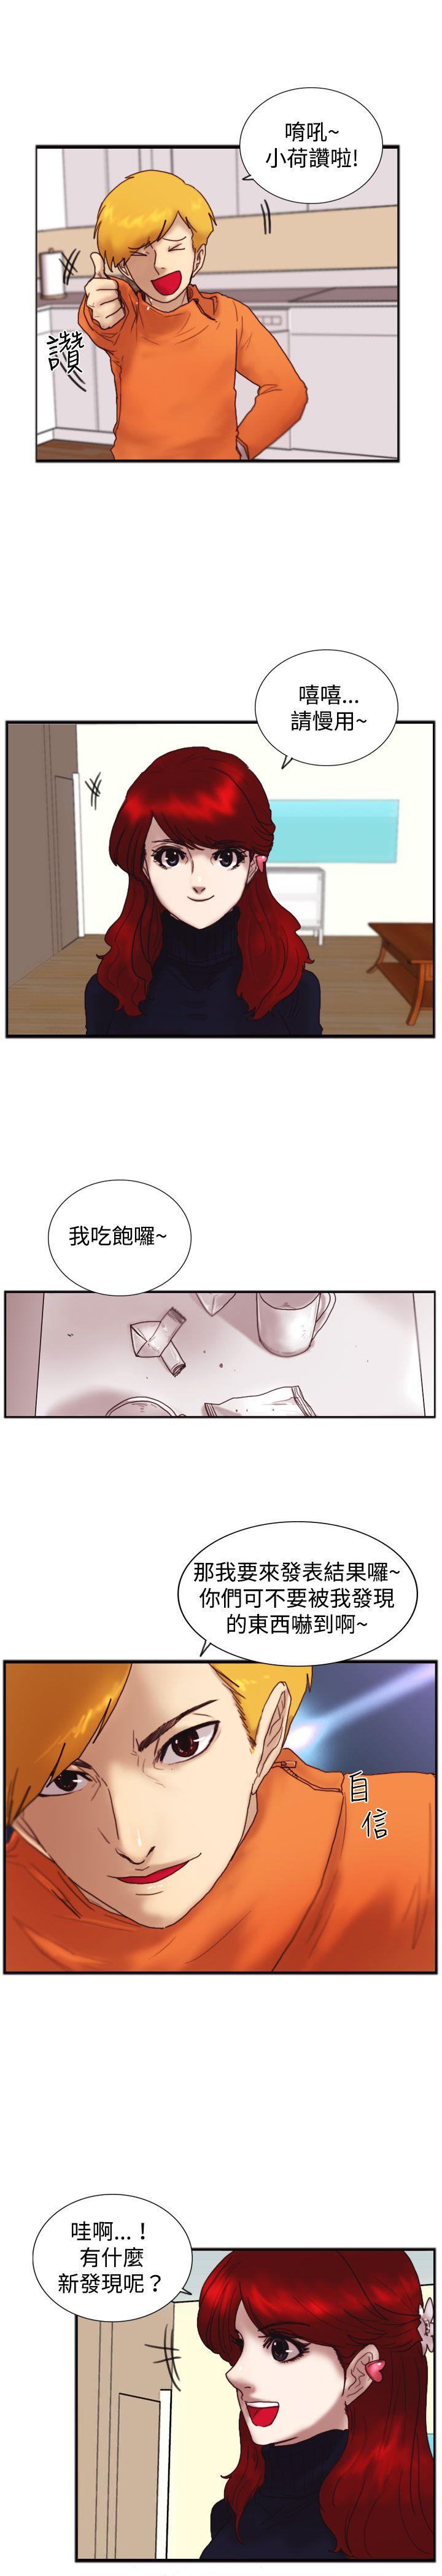 韩国污漫画 覺醒(完結) 第20话标誌 13